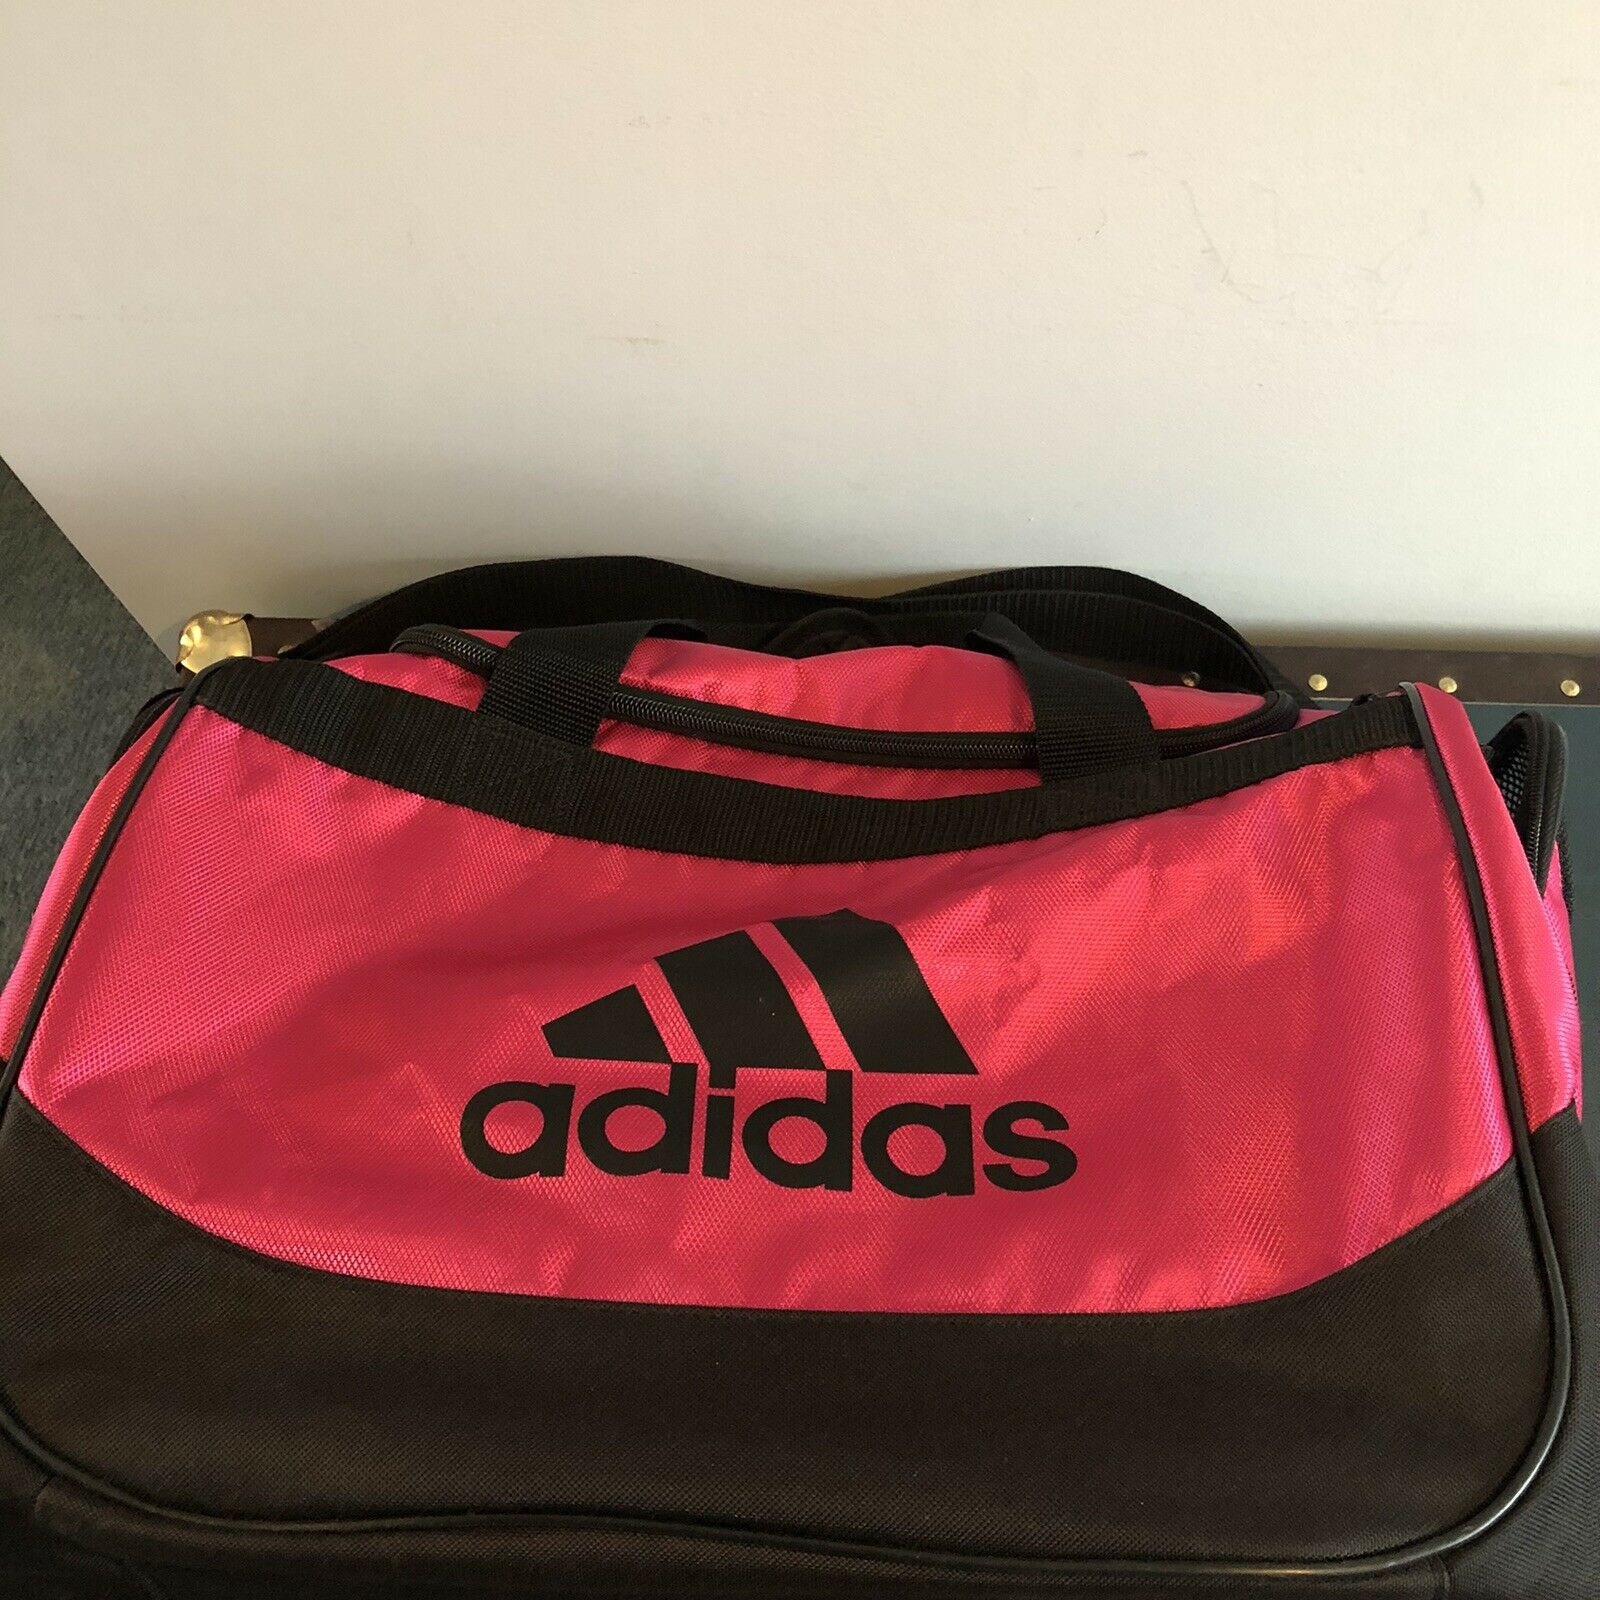 Adidas Pink And Black Gym Bag